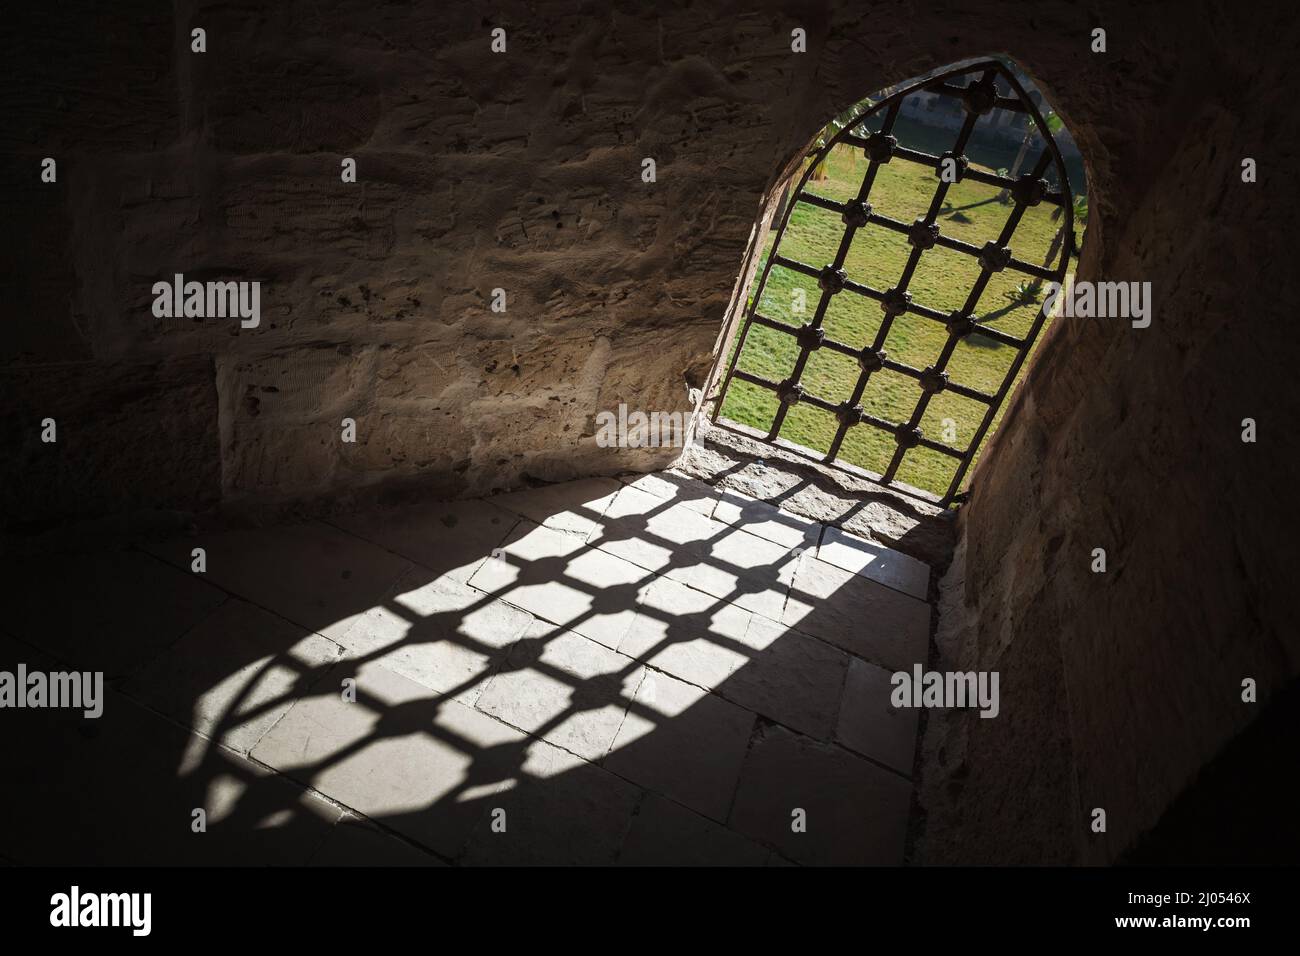 Finestra chiusa nel buio antico carcere interno, astratto scuro sfondo architettonico Foto Stock